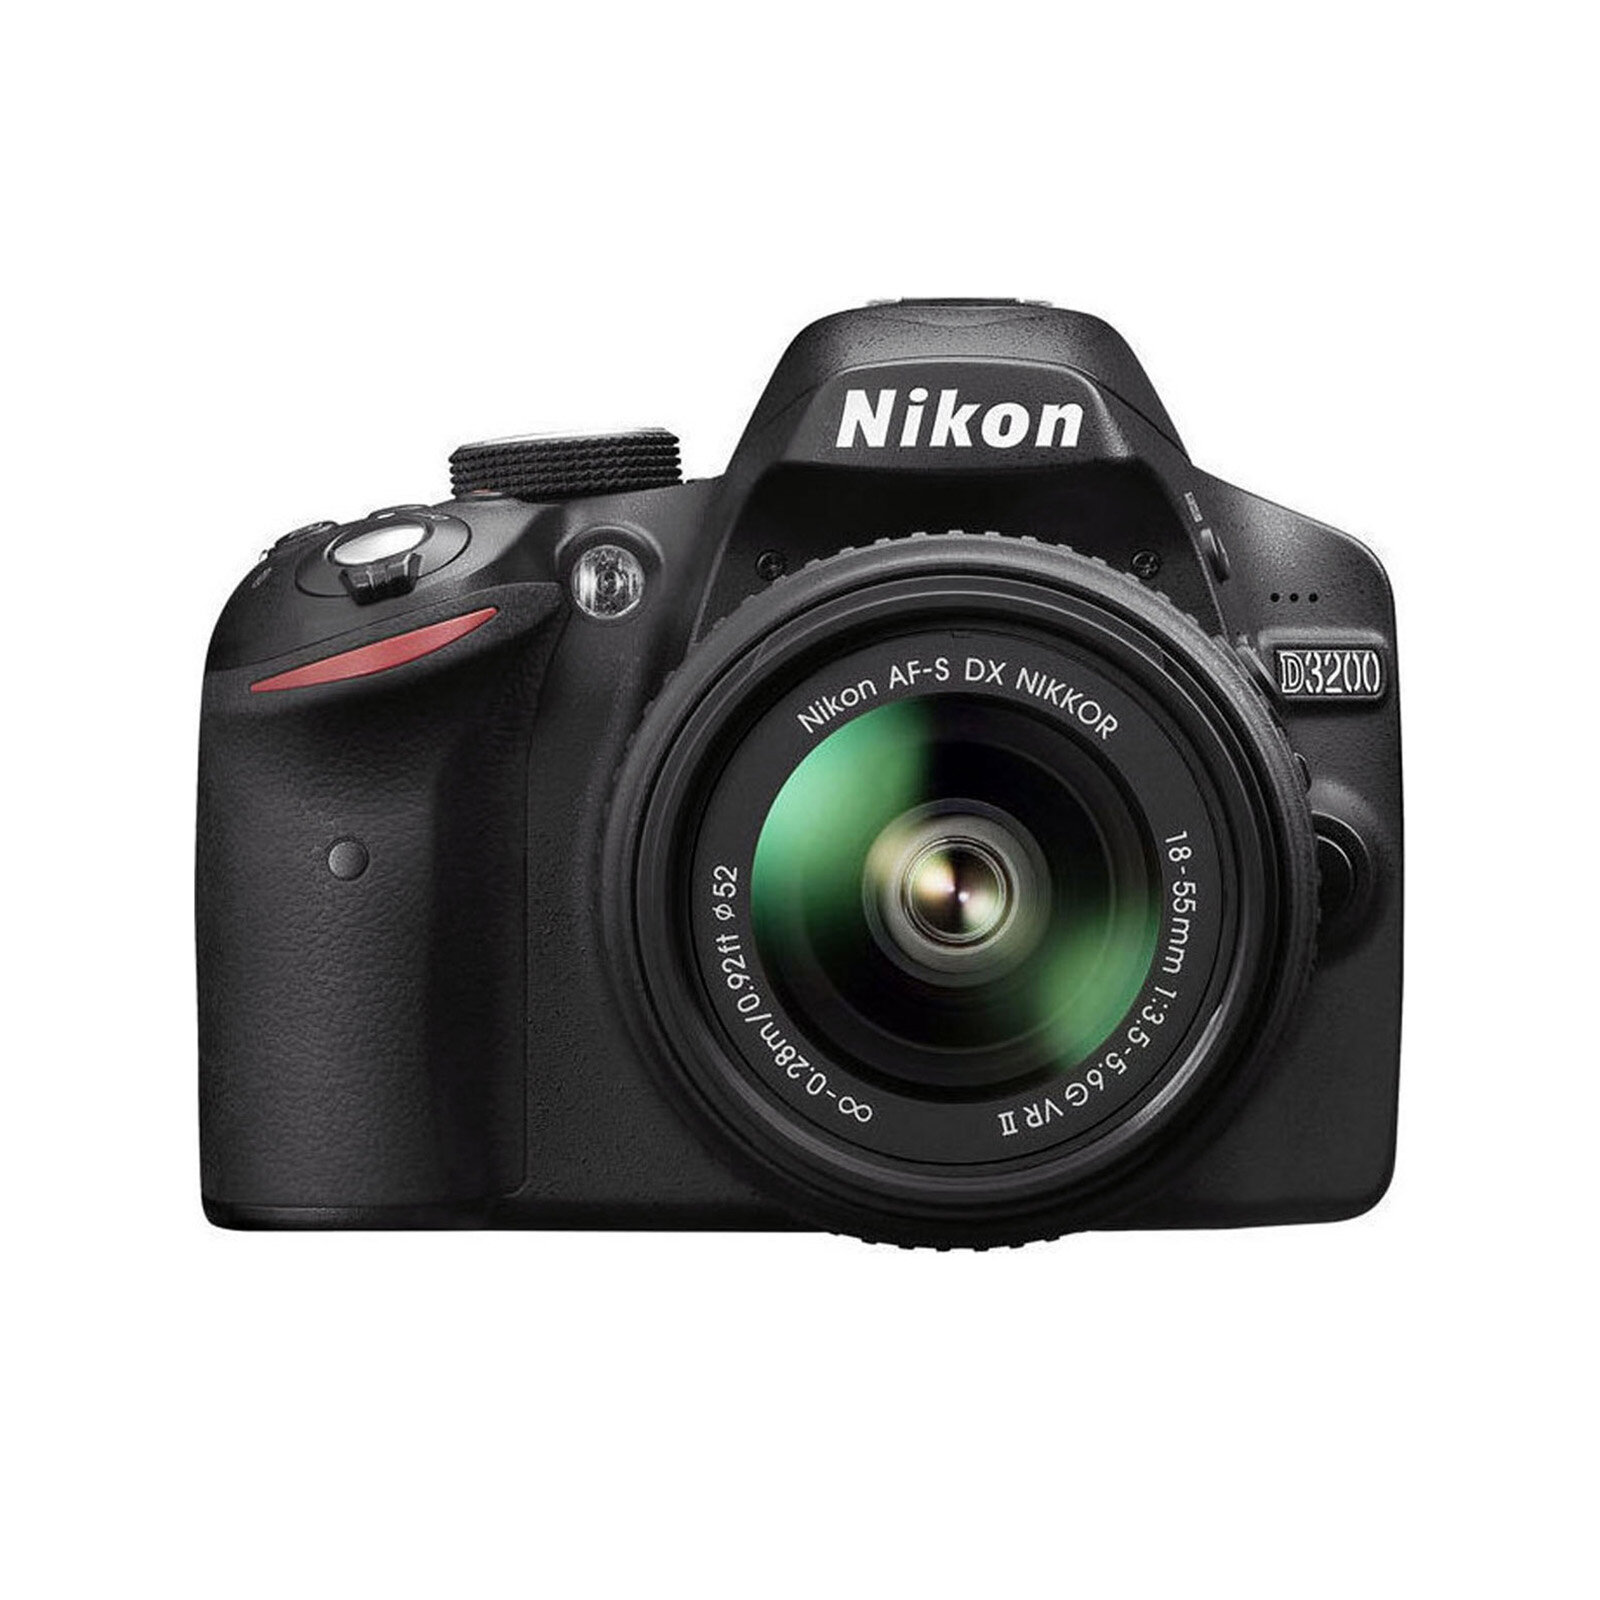 Nikon D3200 Kit AF-S DX Nikkor 18-55mm f/3.5-5.6G VR II